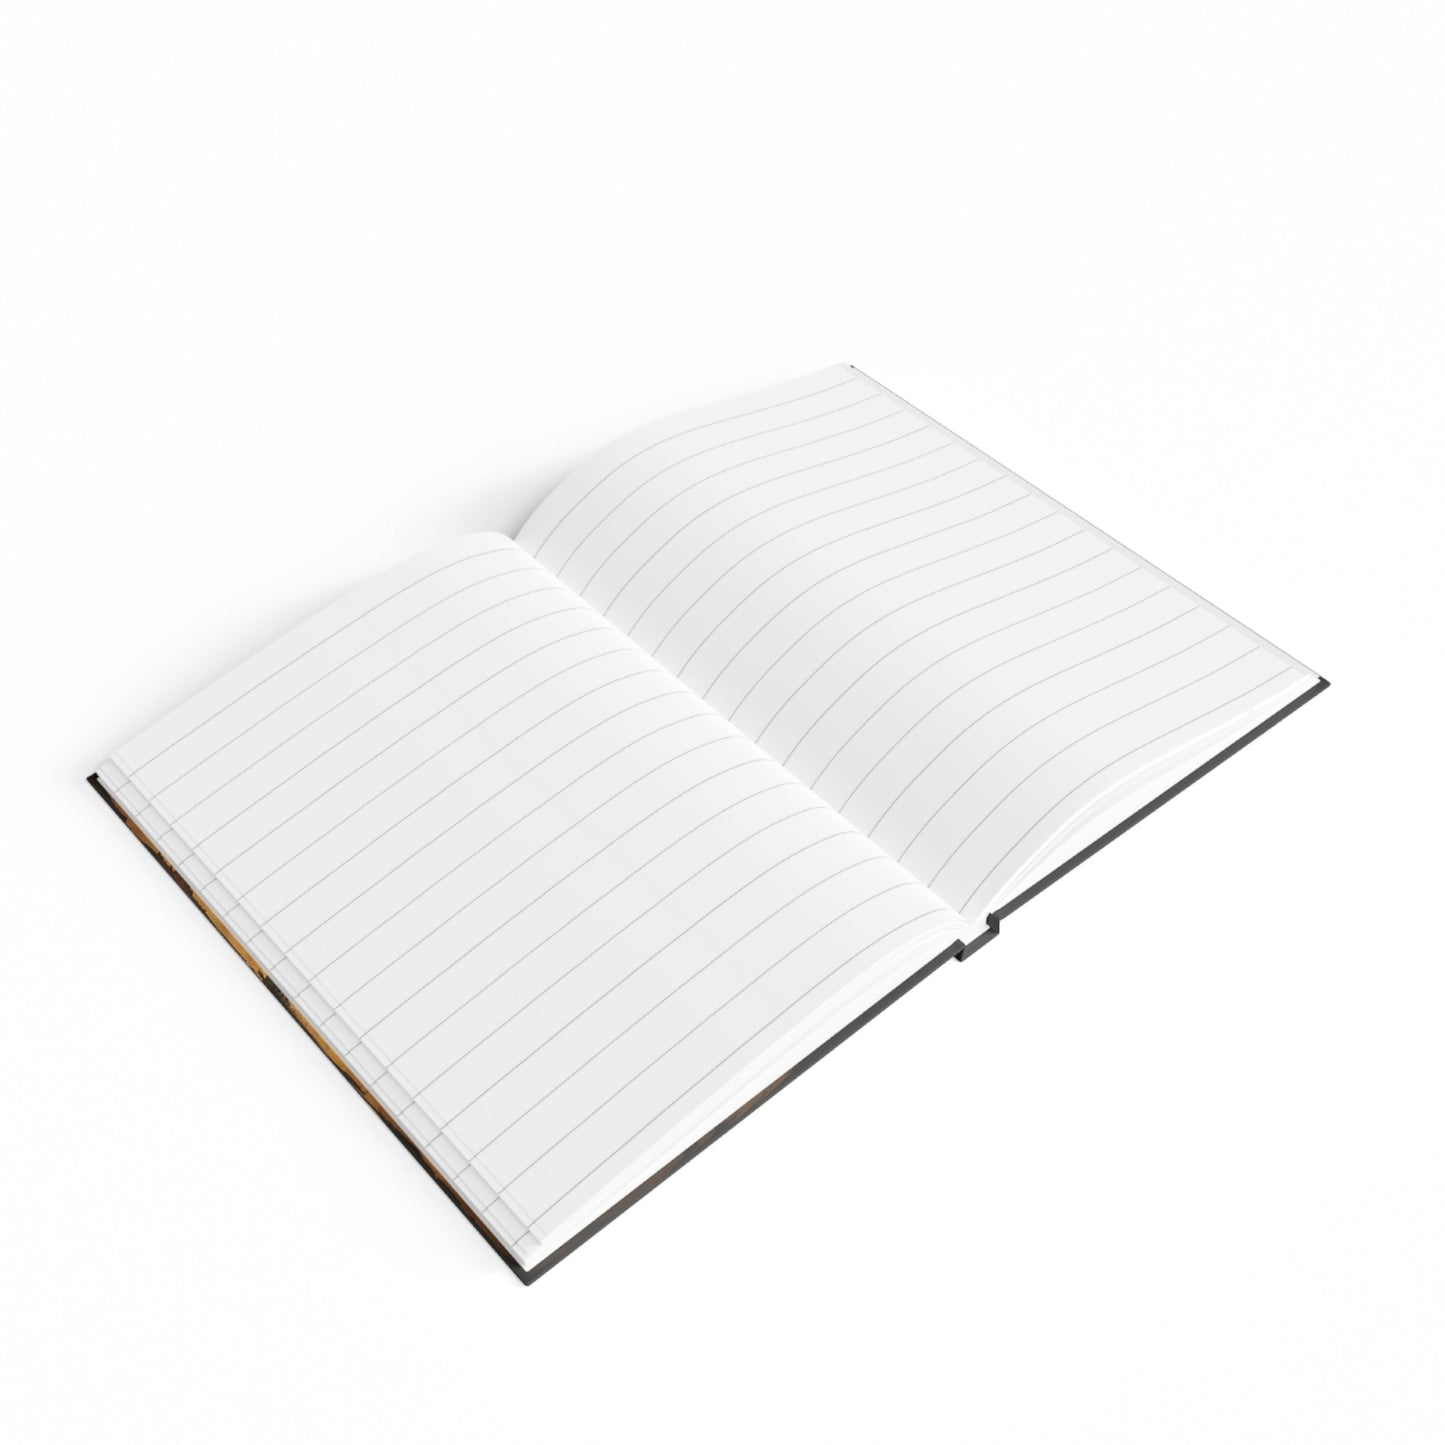 Sketchbook for Kids - Hard Backed Journal